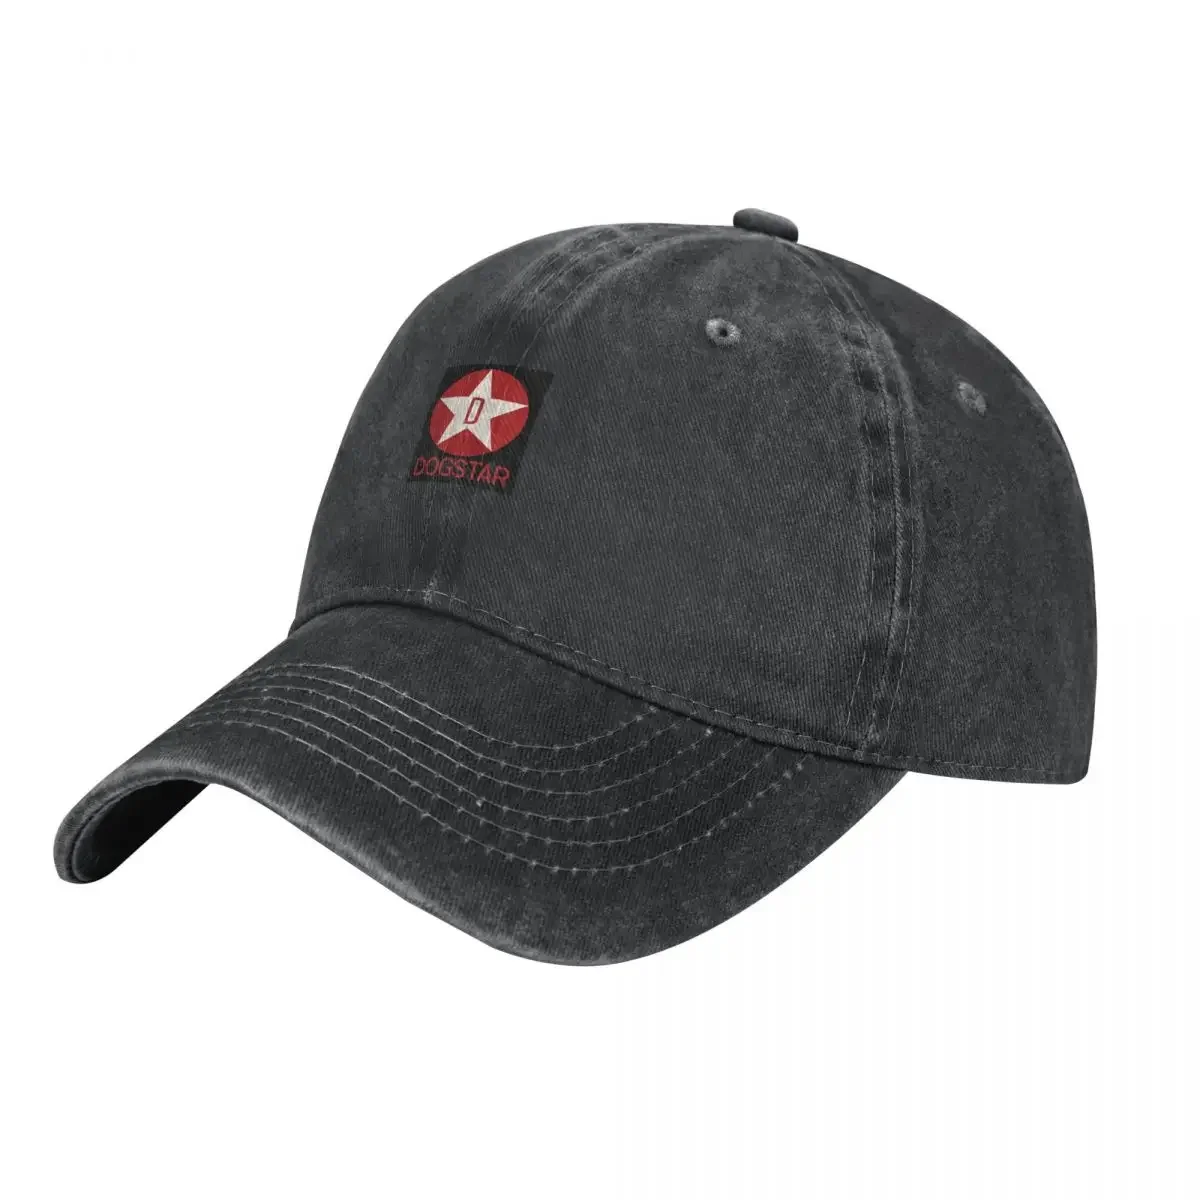 

Ковбойская шляпа с логотипом DOGSTAR (ремешком Кеану), Черная Мужская Шляпа Для солнцезащитной рыбалки, Кепка-тракер для мужчин и женщин